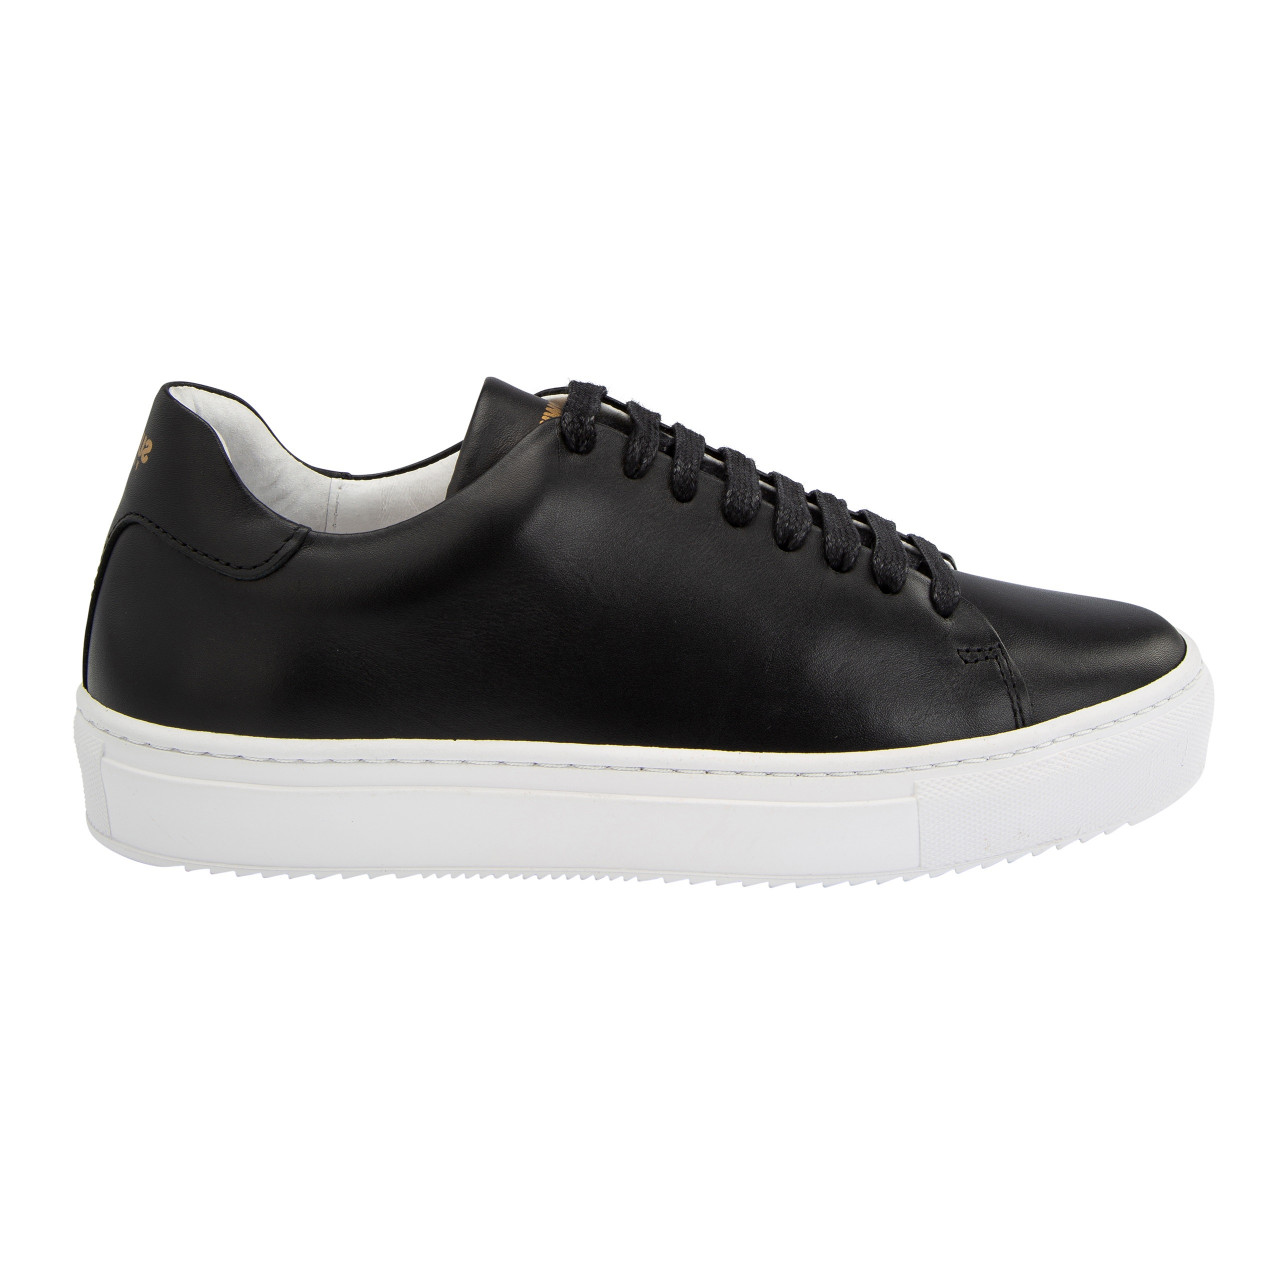 Suedwind-Ashton-Leather-Leder-Sneaker-Schuhe-Boots-Black-Schwarz-10170010-01_gespiegelt_1280x1280